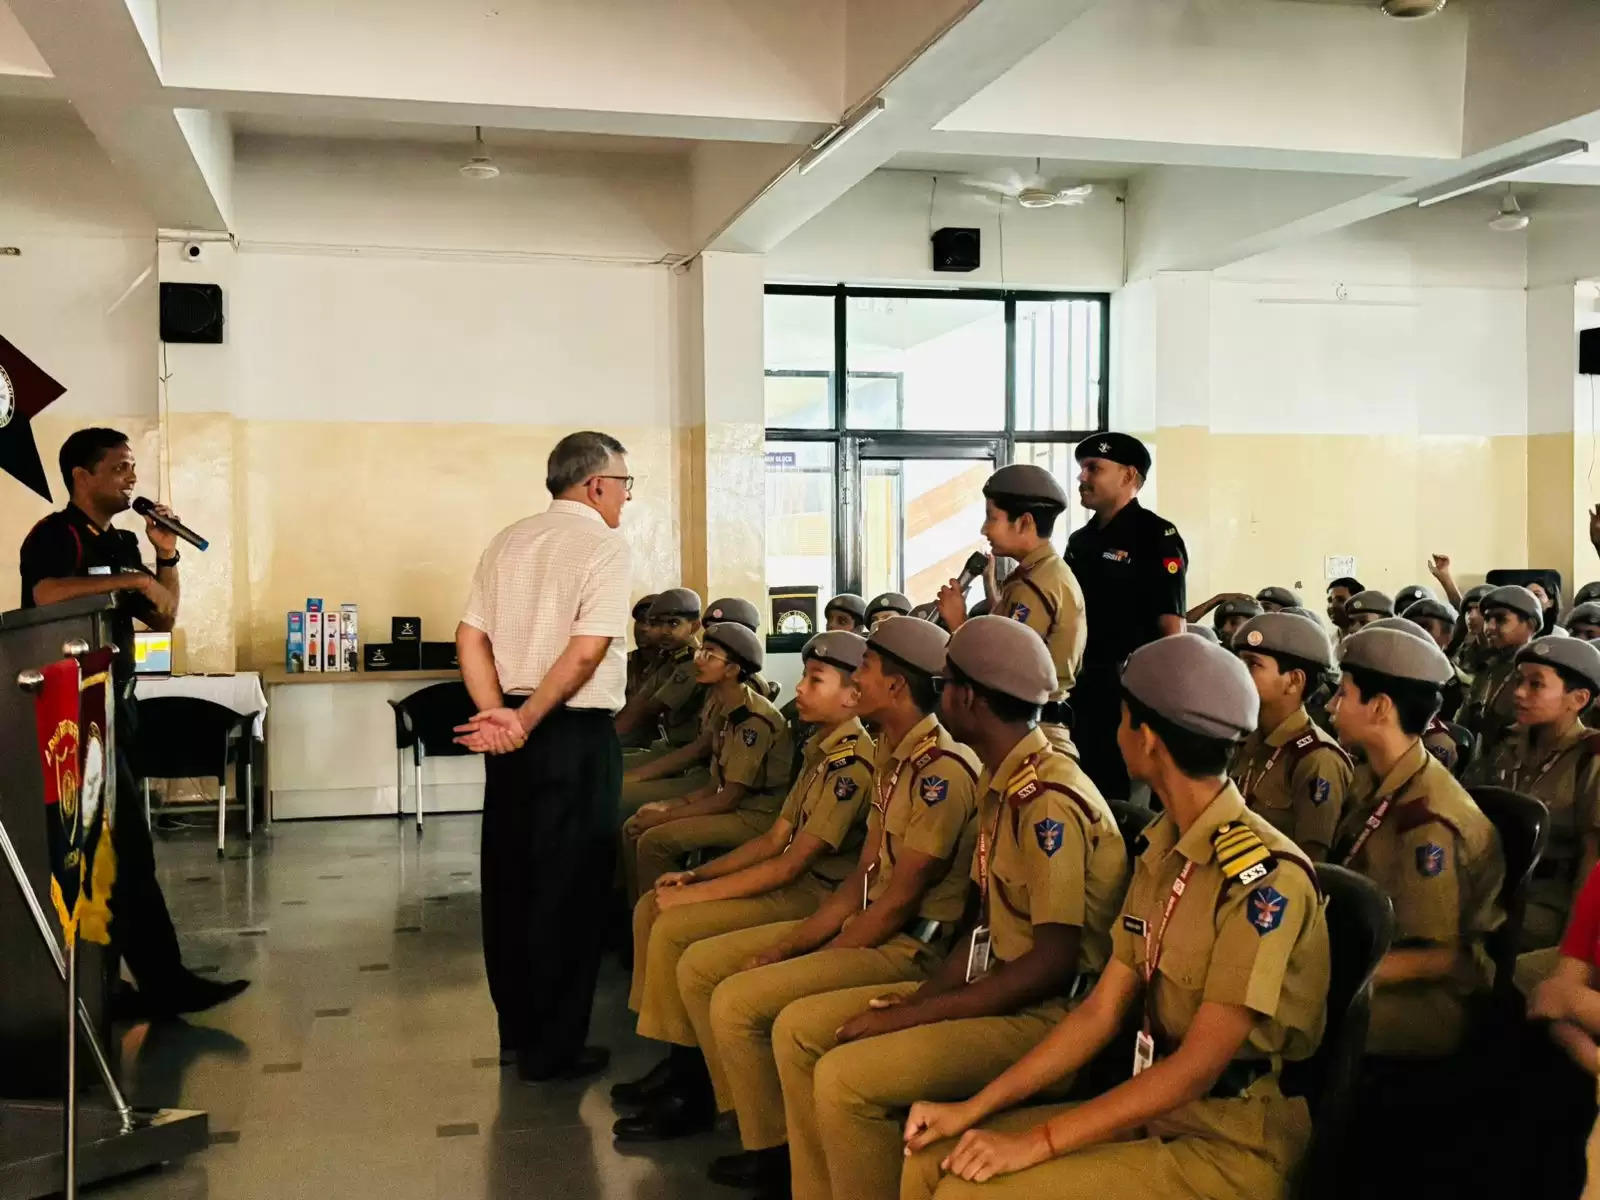   सैनिक स्कूल खारा खेड़ी में बेहतरीन सुविधाएं : कर्नल एमेया सावंत